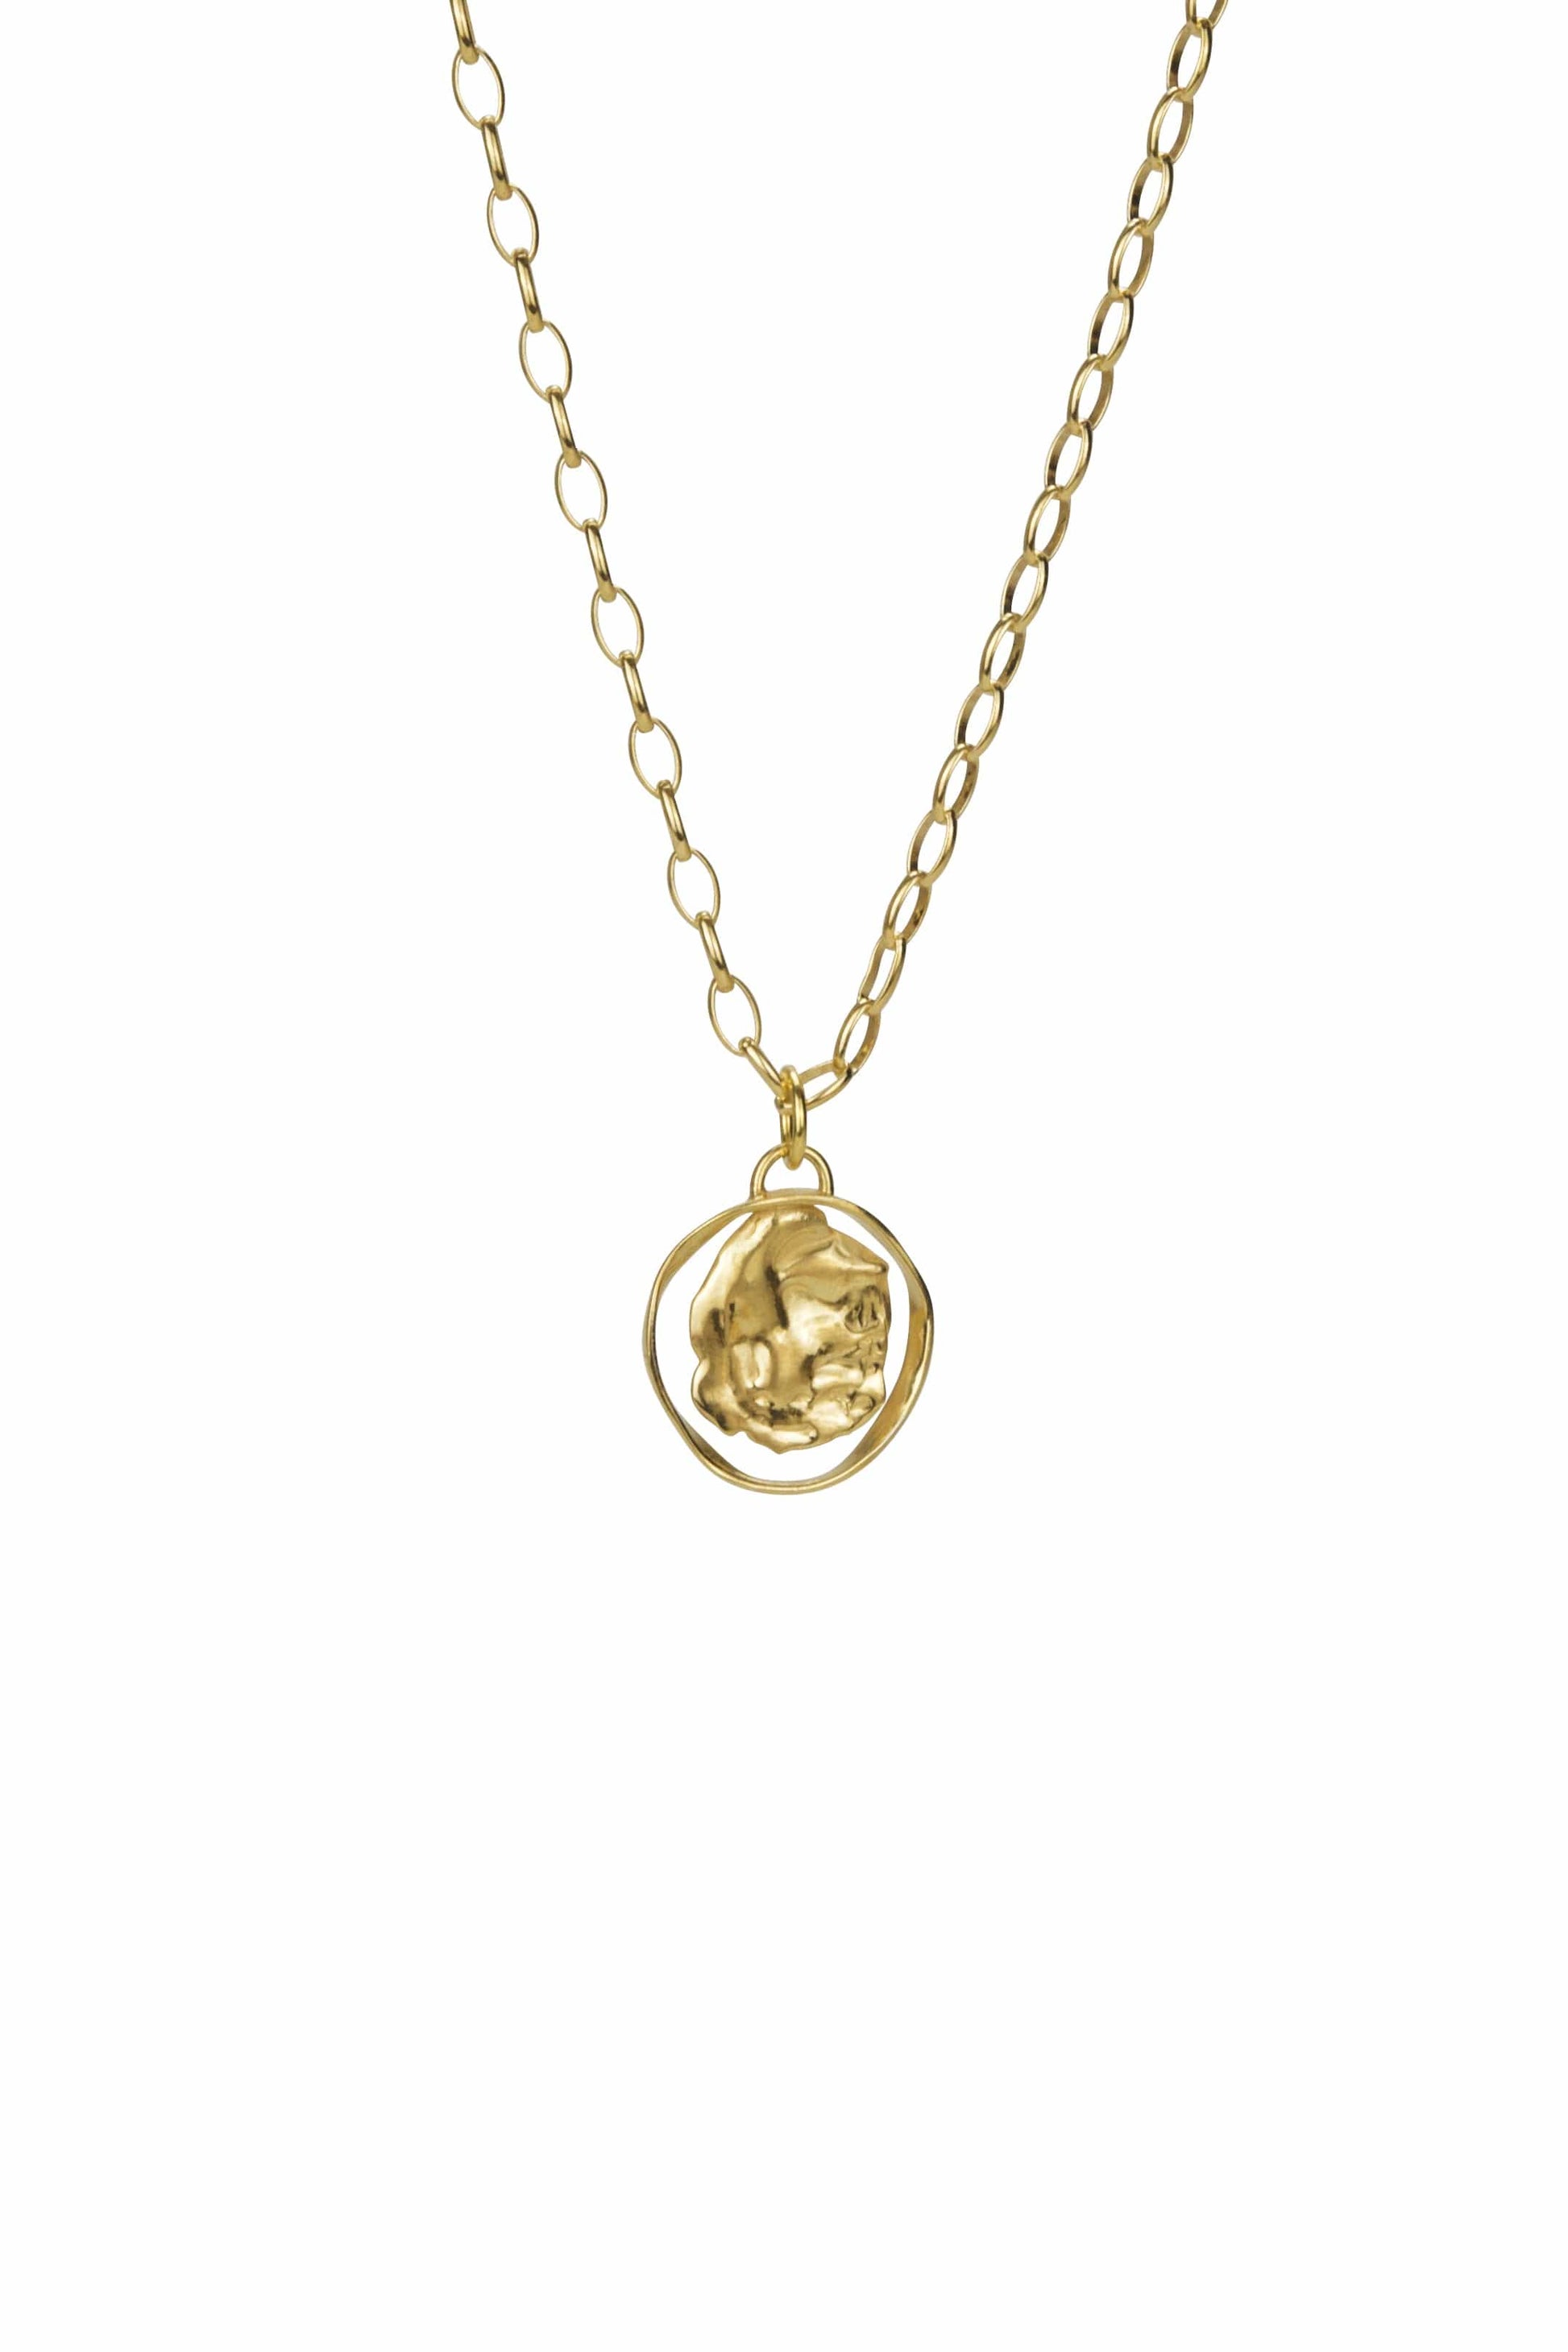 BONVO-Dia Arc Necklace-GOLD